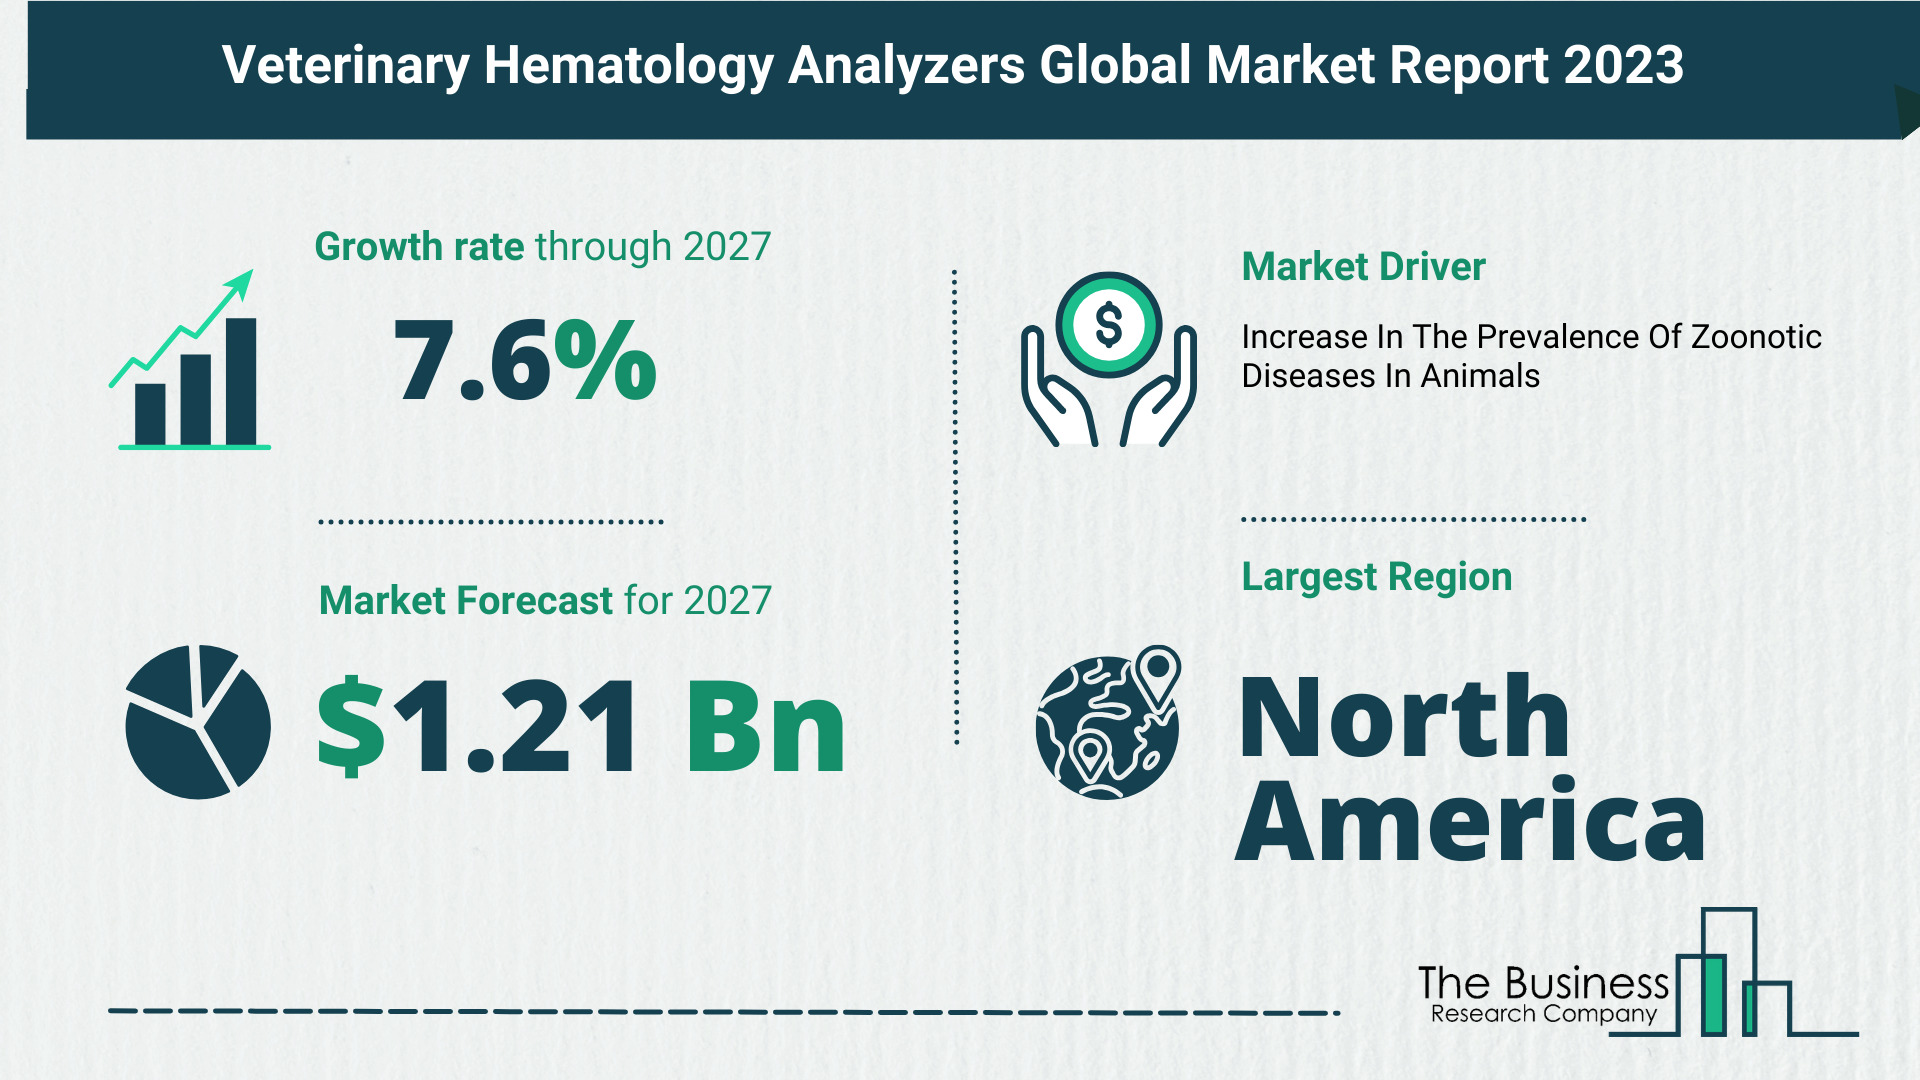 Global Veterinary Hematology Analyzers Market